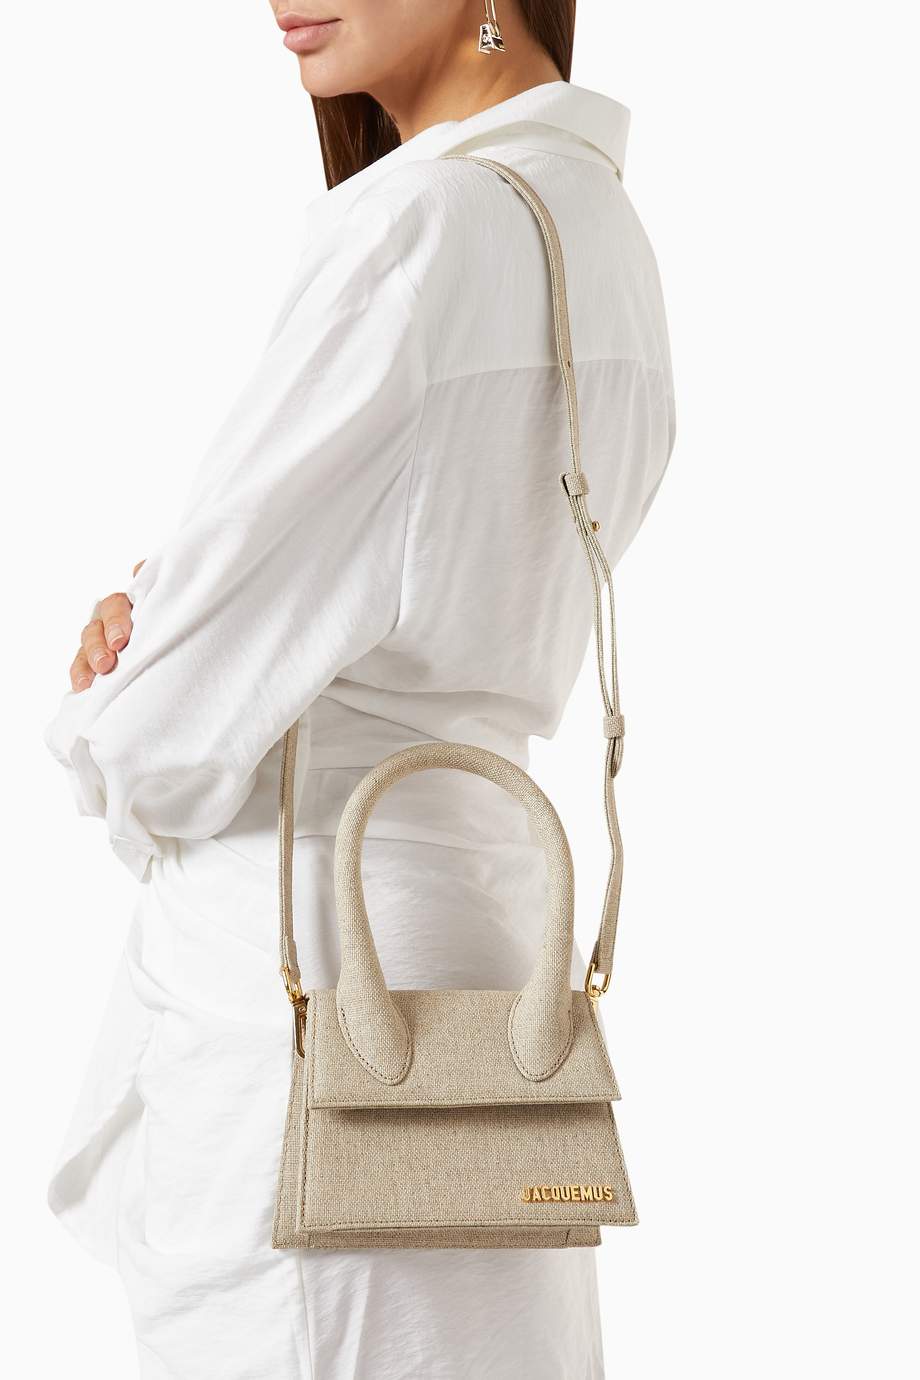 Shop Jacquemus Neutral Le Chiquito Moyen Bag in Linen for Women ...